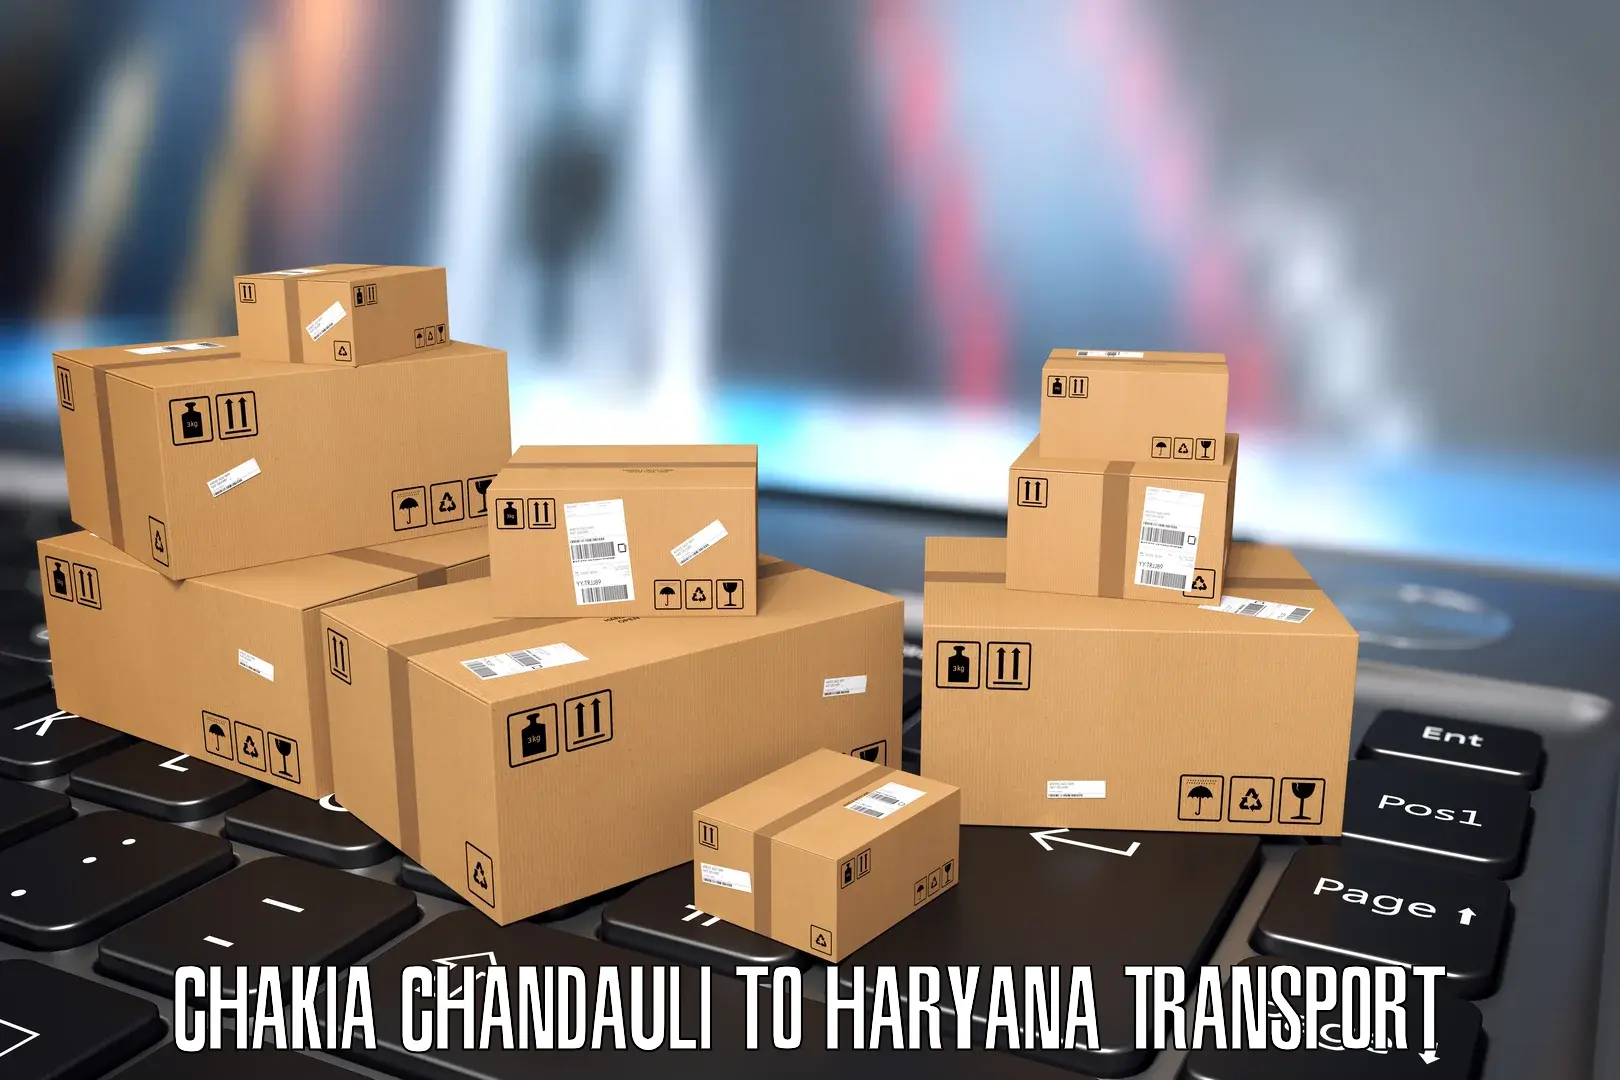 Pick up transport service Chakia Chandauli to Budha Khera